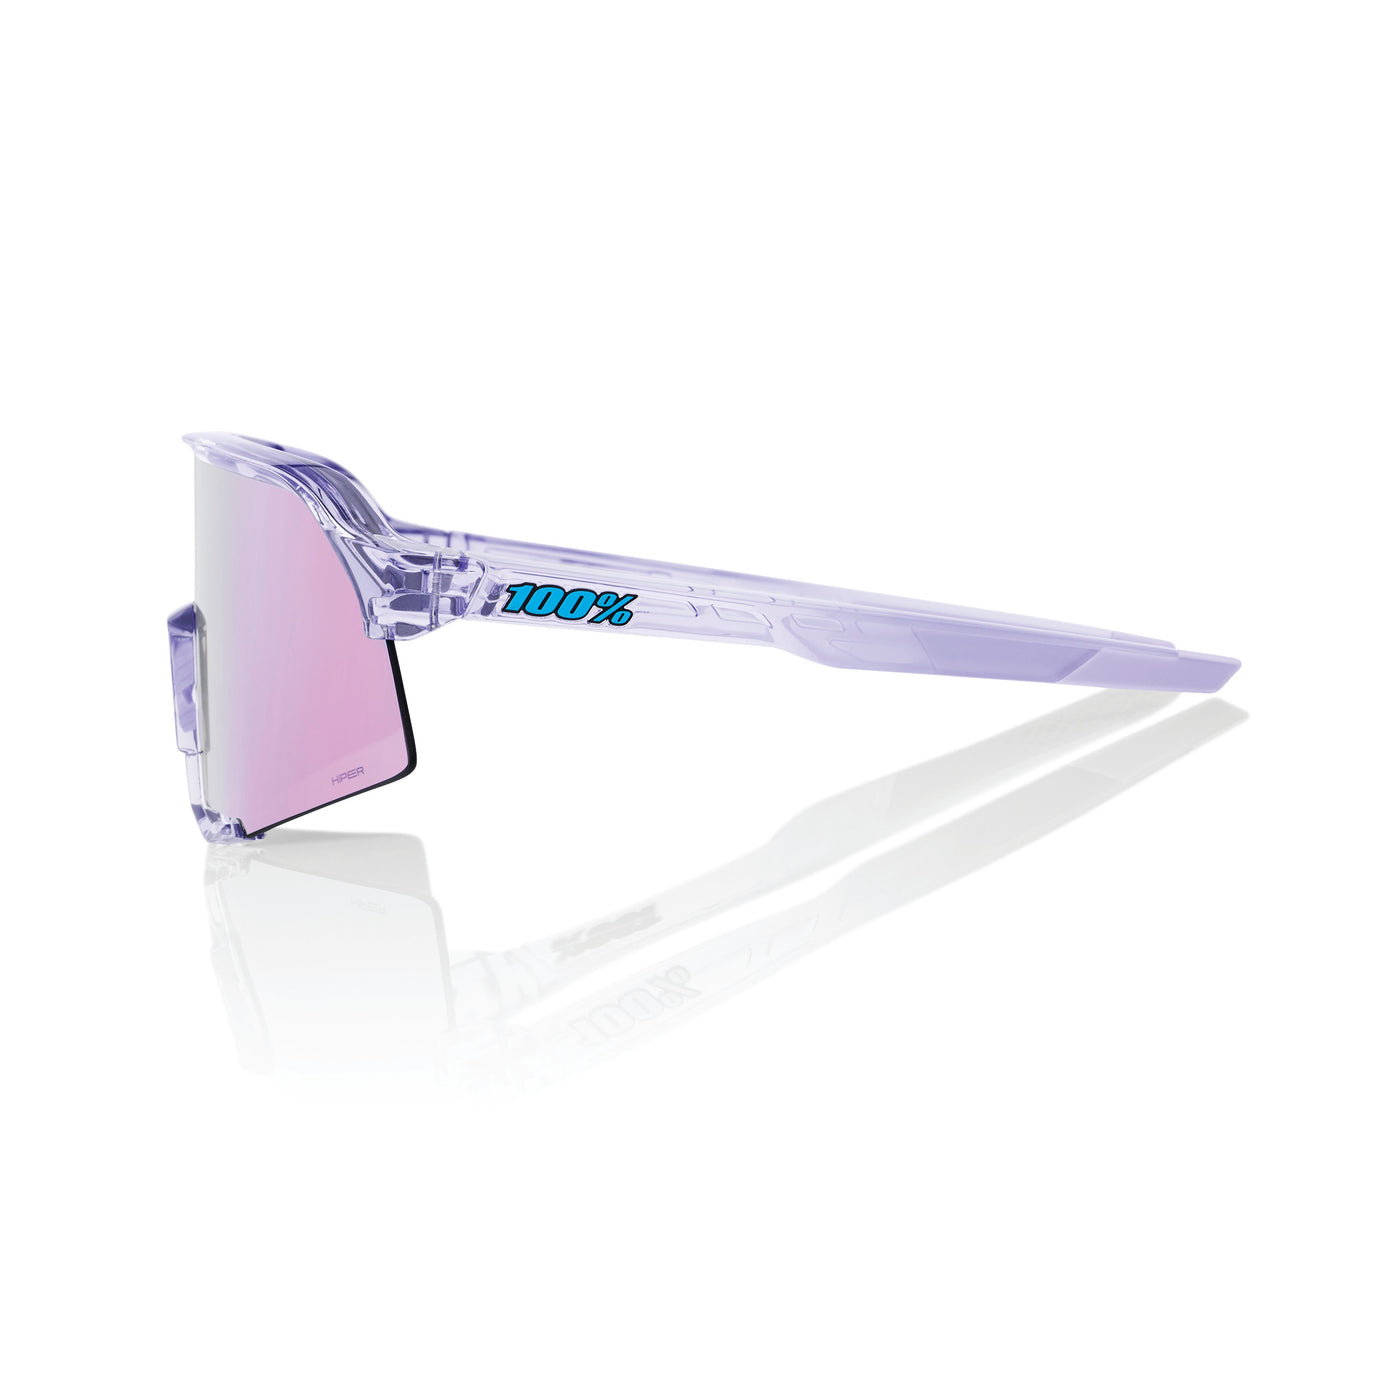 S3 - Polished Translucent Lavender - HiPER Lavender Mirror Lens